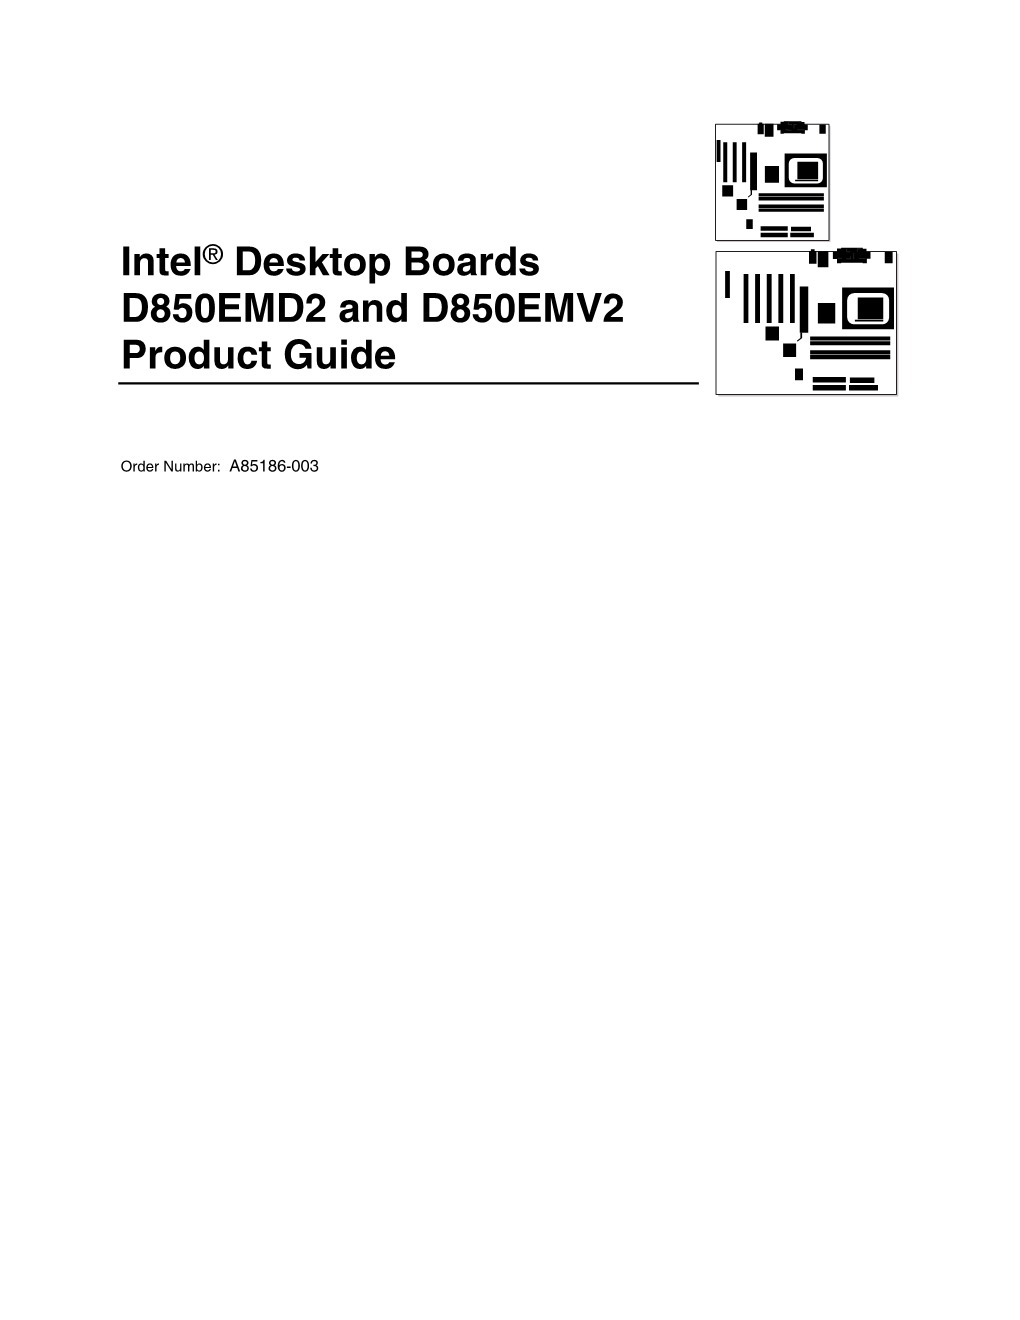 Intel® Desktop Boards D850EMD2 and D850EMV2 Product Guide